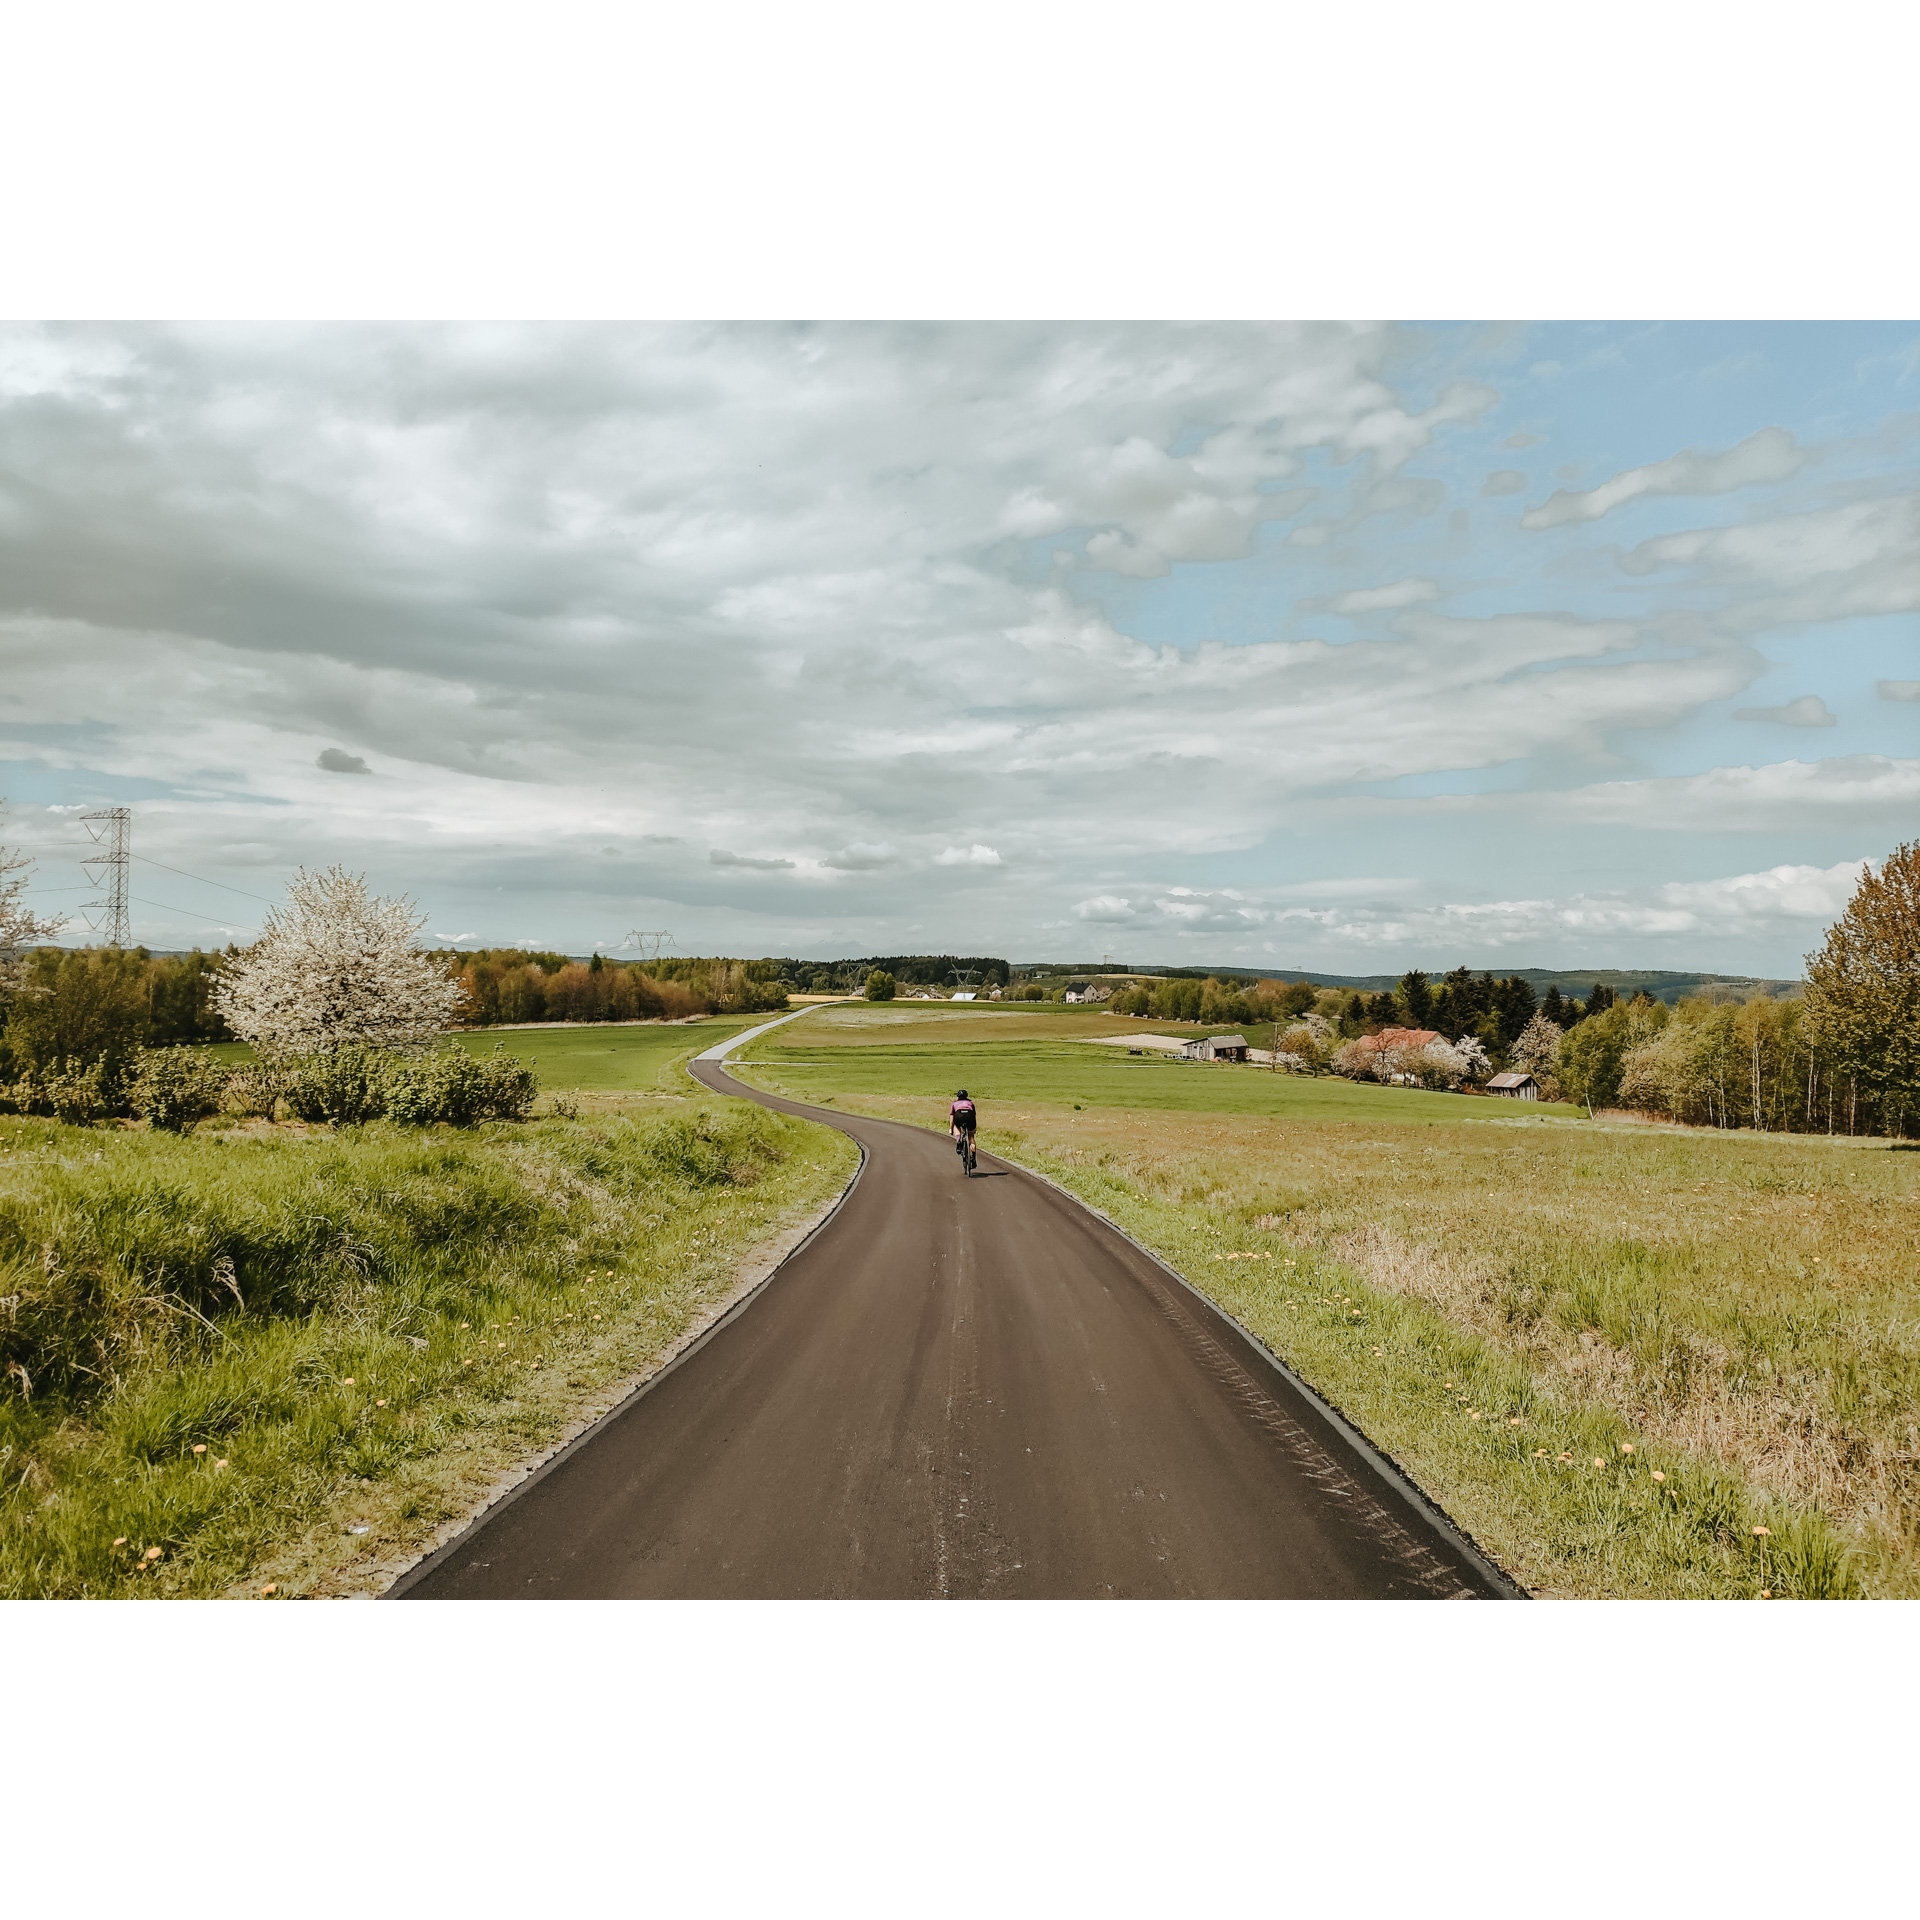 Rowerzysta w czarnym stroju i kasku jadący na rowerze drogą asfaltową biegnącą między zielonymi łąkami, w tle niebieskie niebo i chmury, w oddali domostwa i wzgórza